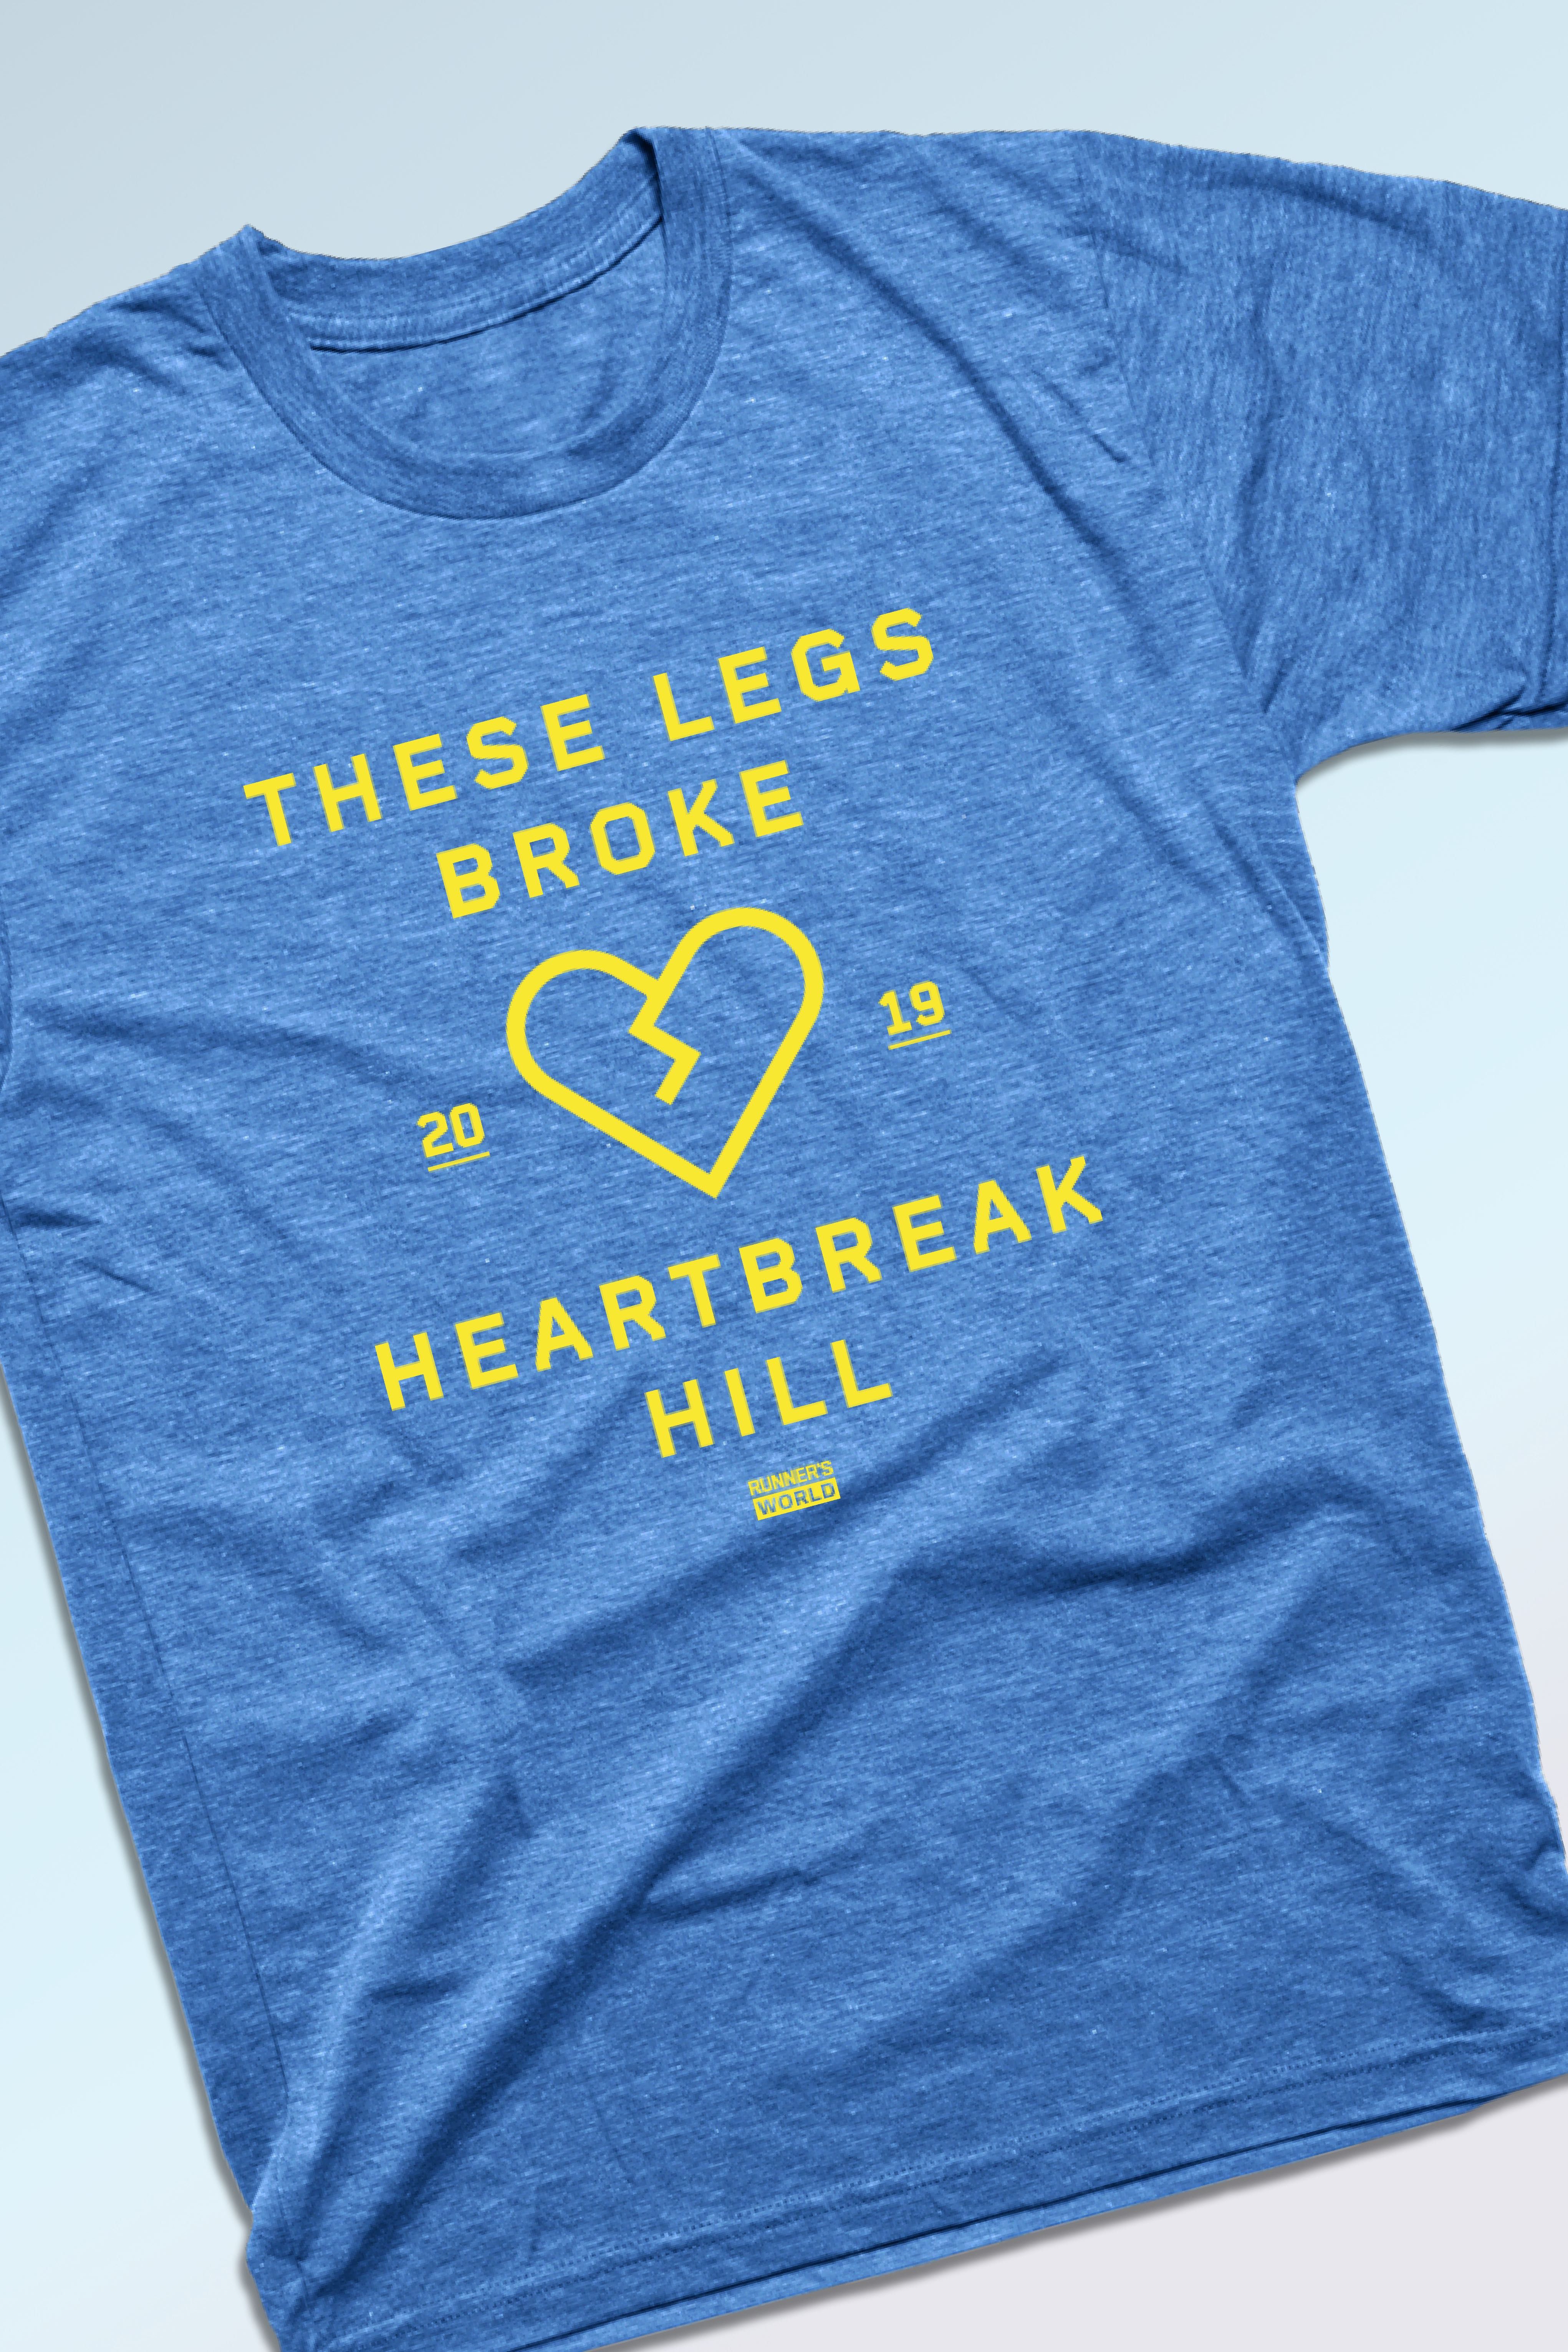 RW Heartbreak Hill T-Shirt - Blue